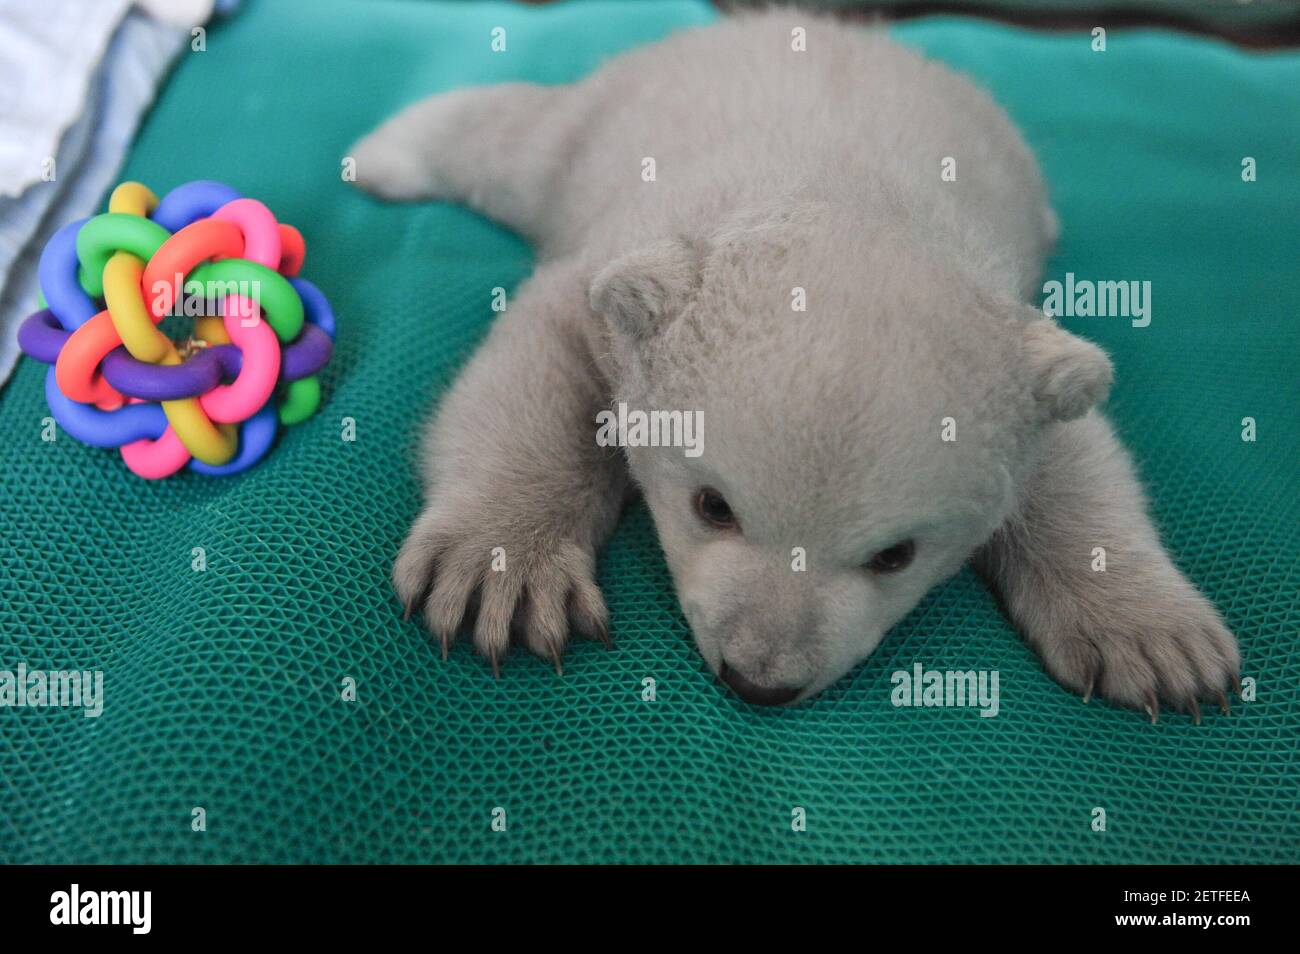 170218) -- YANTAI, 18 febbraio 2017 (Xinhua) -- il cucciolo di orso polare  'Yilina' suona nell'Acquario dell'Oceano di Penglai nella Provincia di  Shandong della Cina orientale, 18 febbraio 2017. 'Yilina', un orso